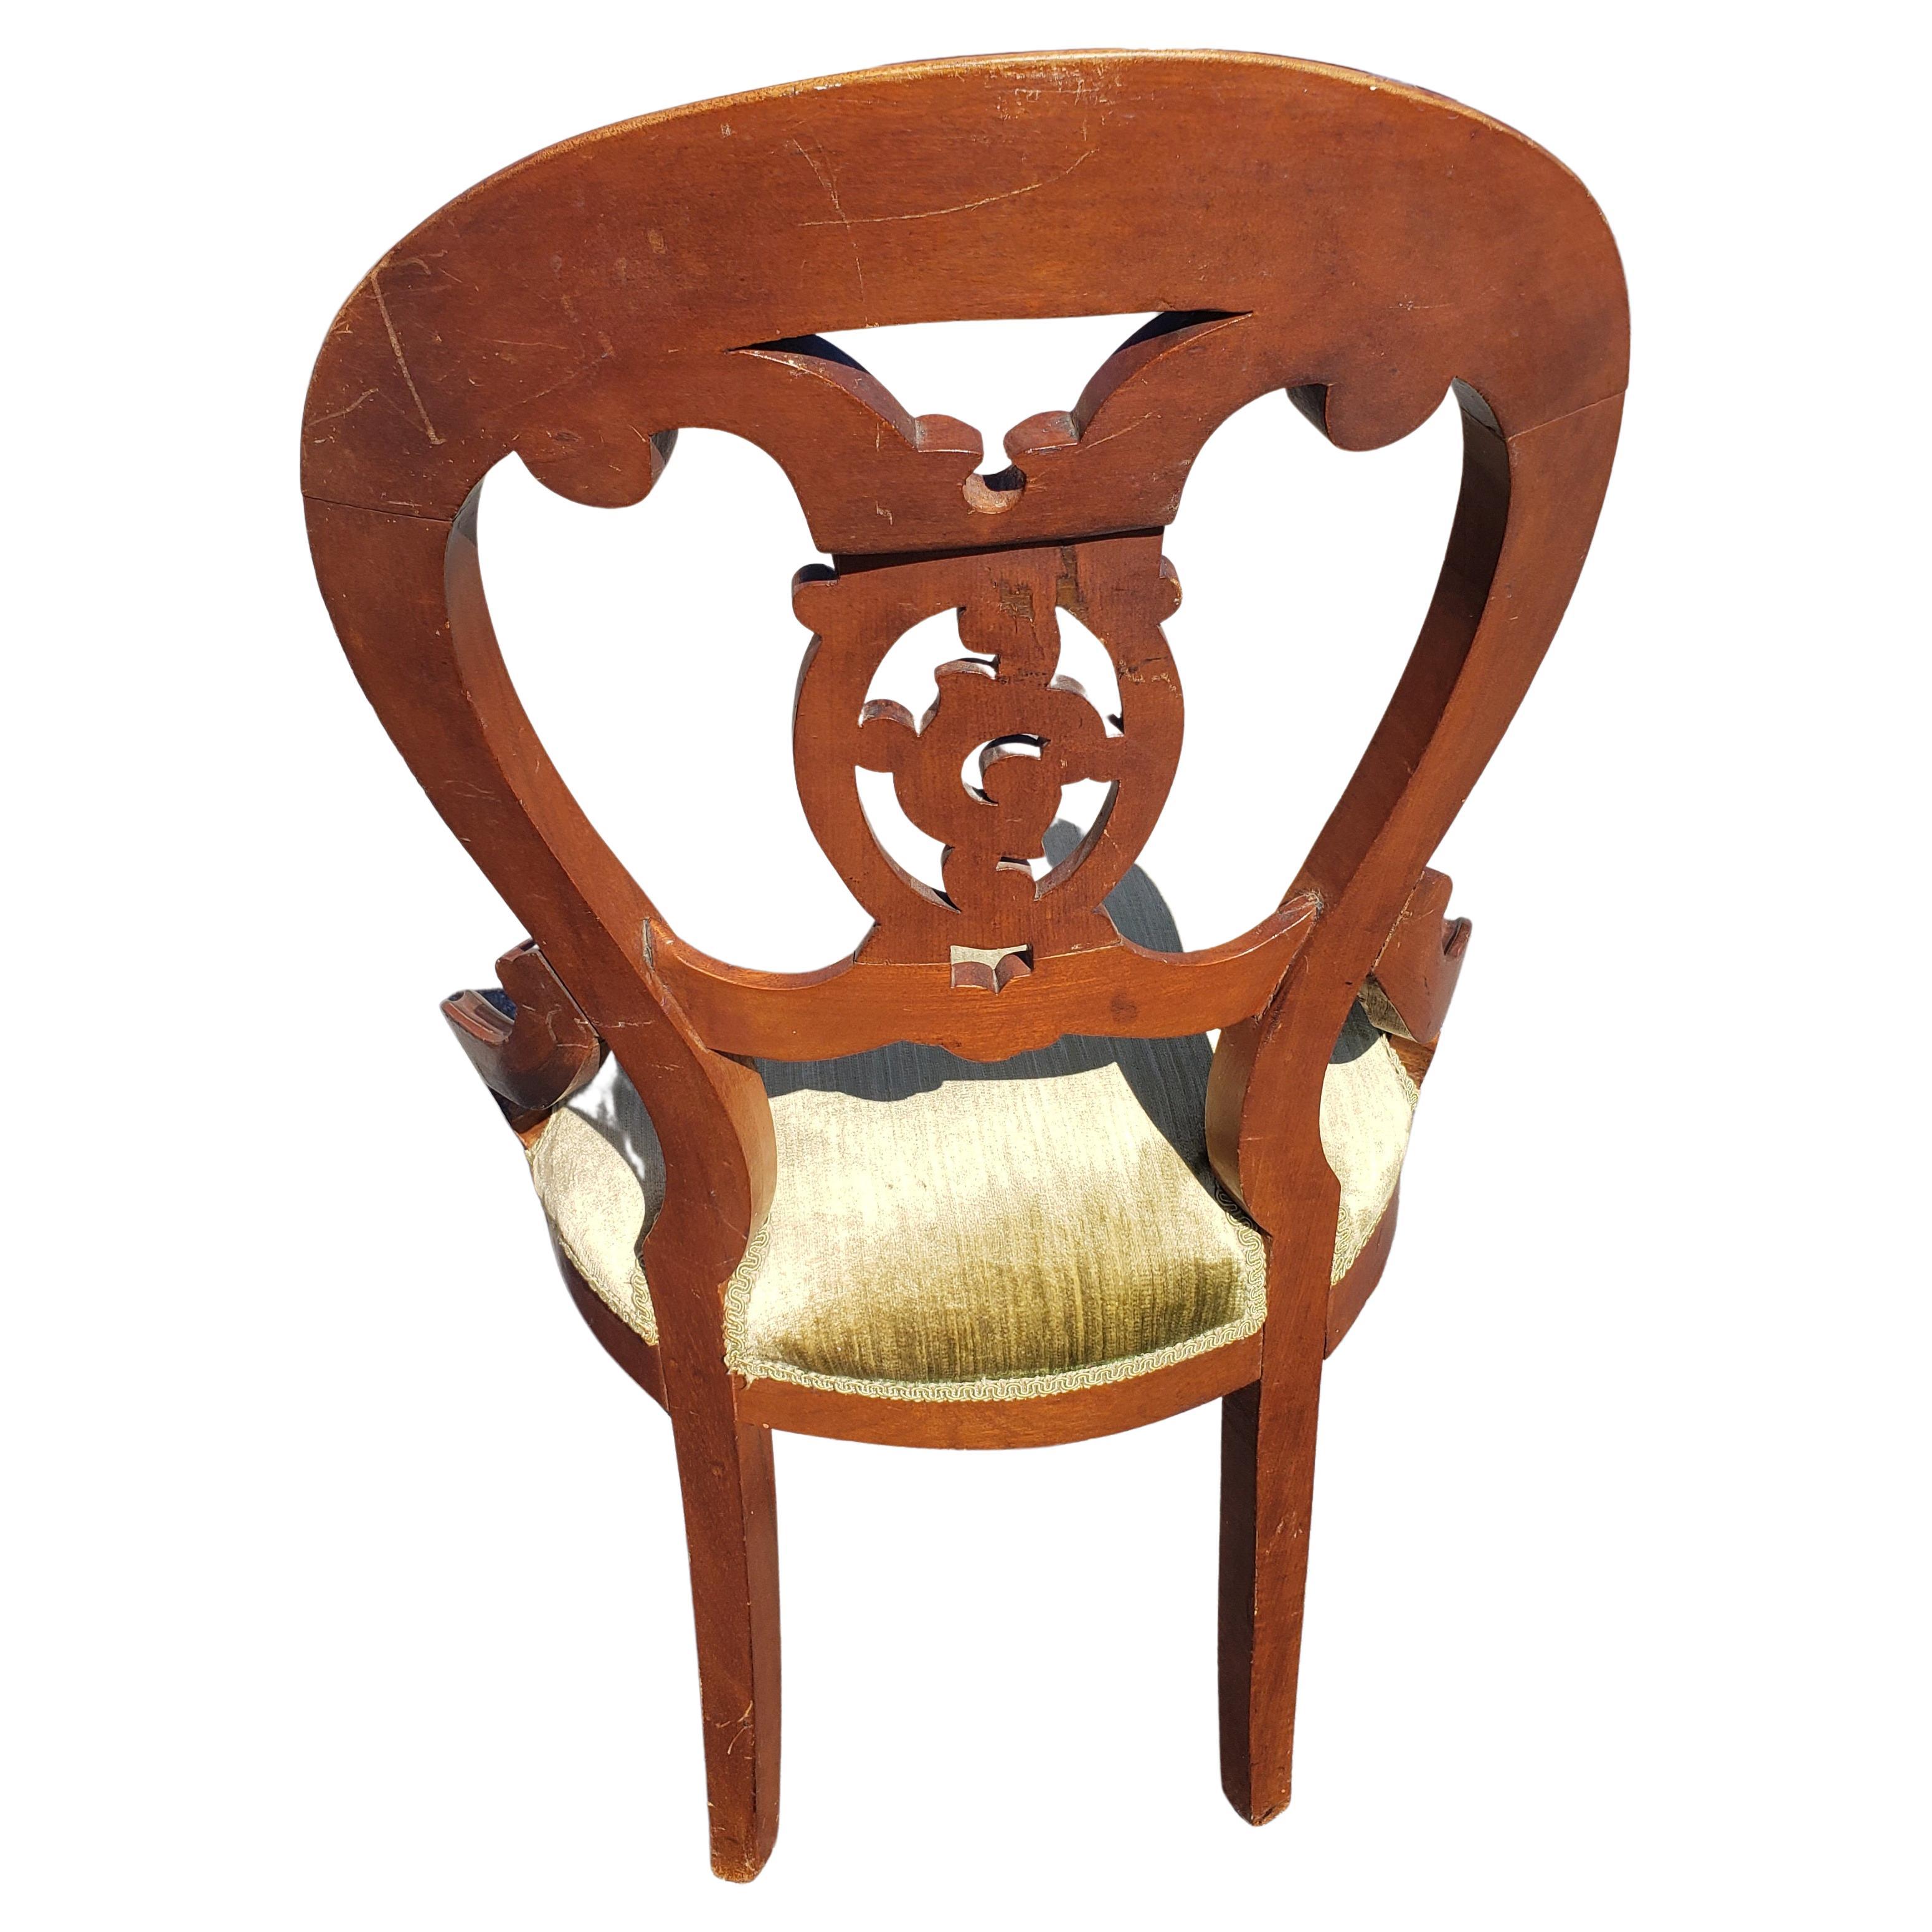 Victorian Antique Mahagoni geschnitzt Ballon zurück gepolsterten Sitz Stuhl in gutem Zustand. Der zitronengrüne Samtsitz ist fest und die Polsterung in gutem Zustand.
Stuhl misst 19 